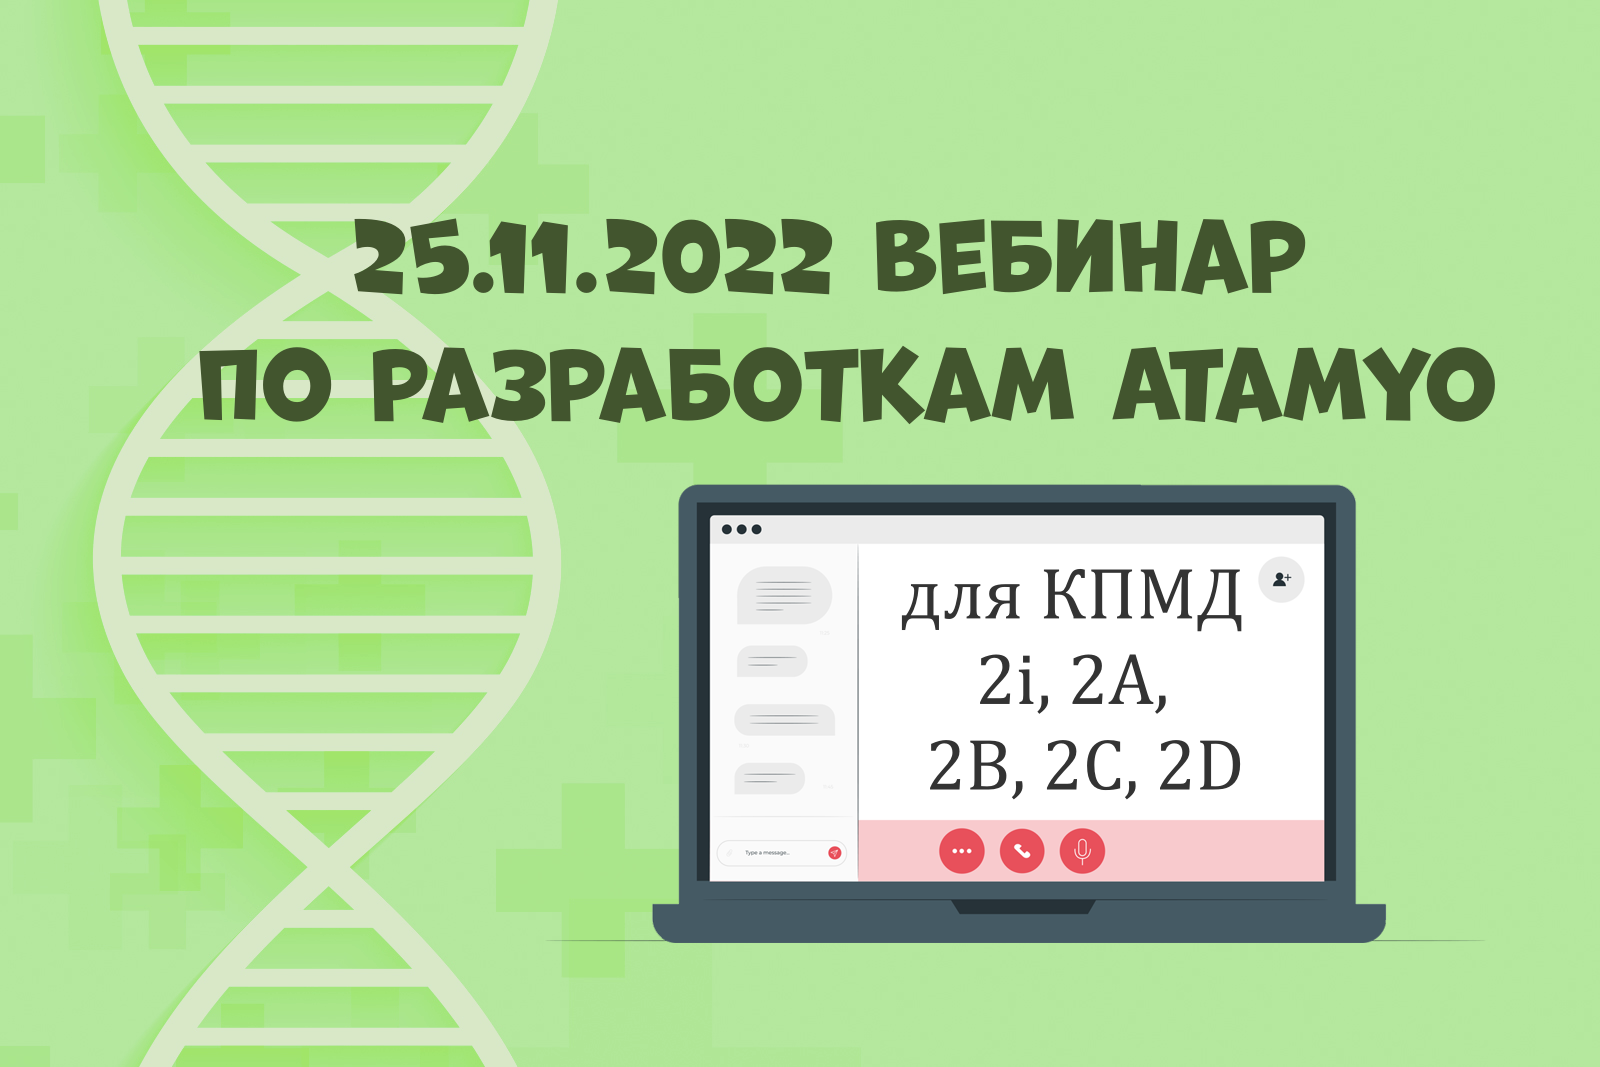 25.11.2022 вебинар по разработкам Atamyo для КПМД 2i, 2A, 2B, 2C, 2D